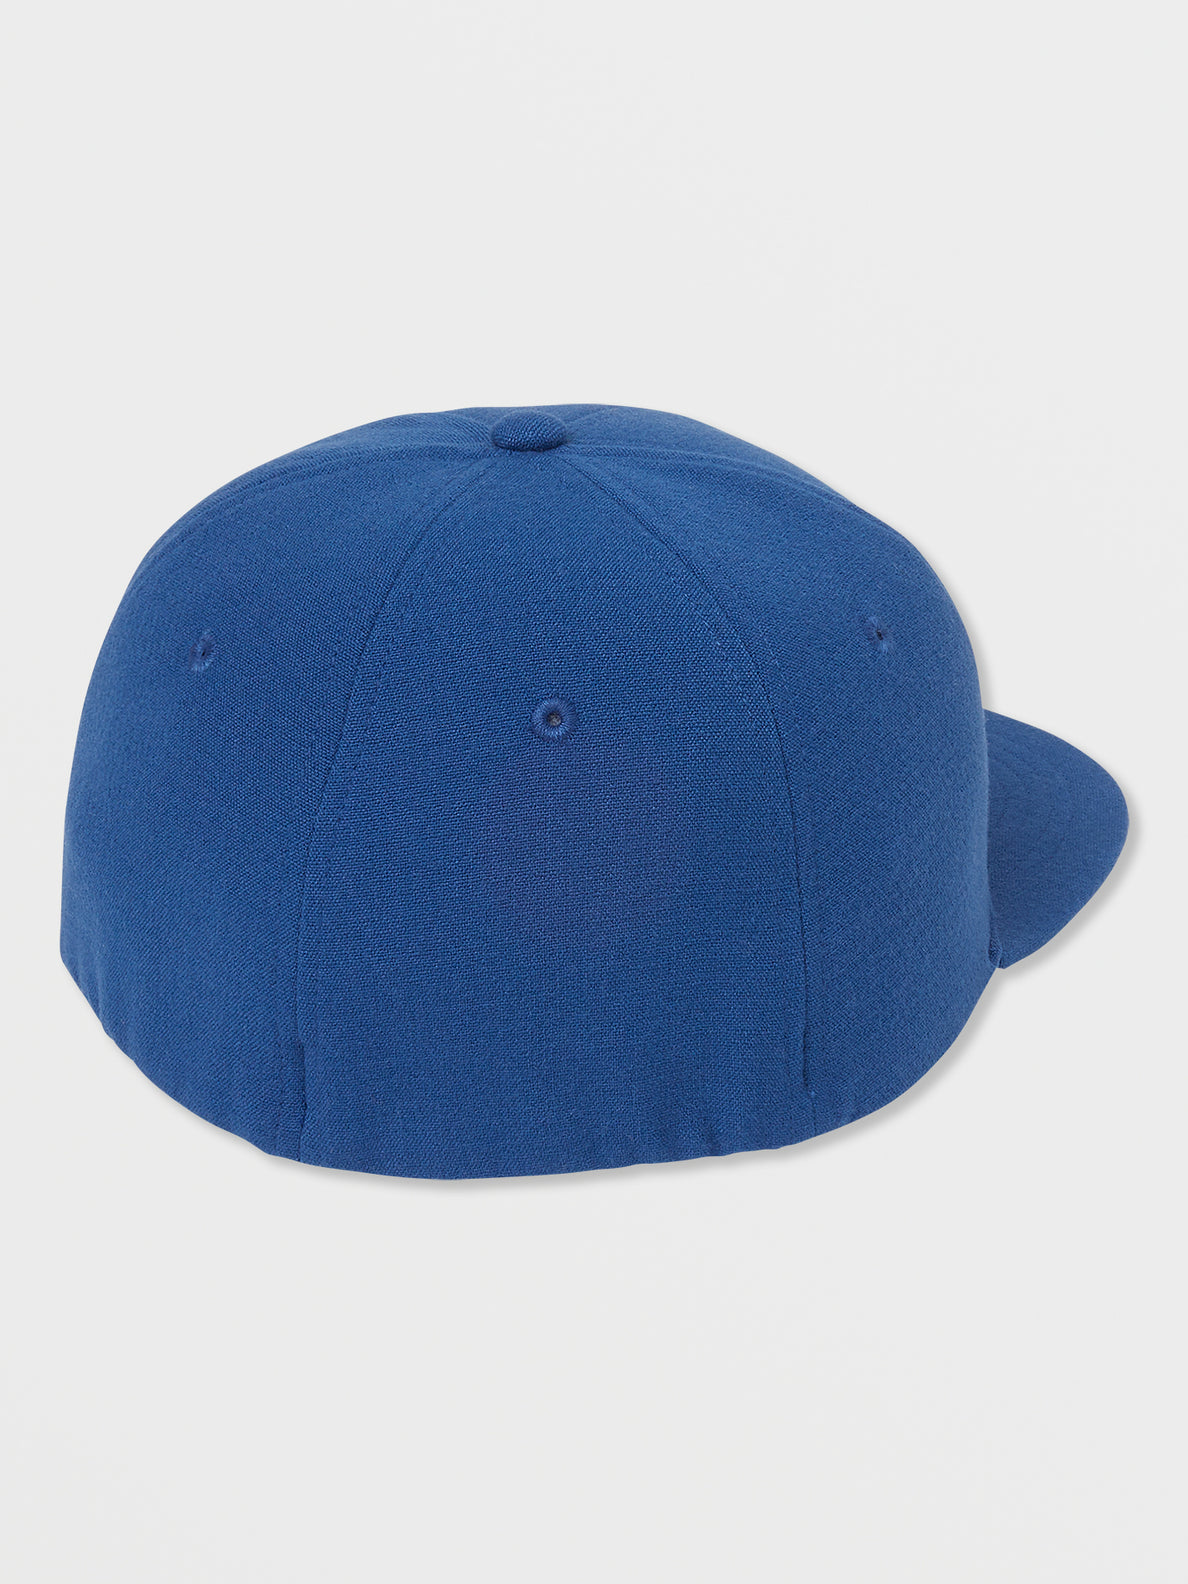 V Square Snapback Hat - Smokey Blue